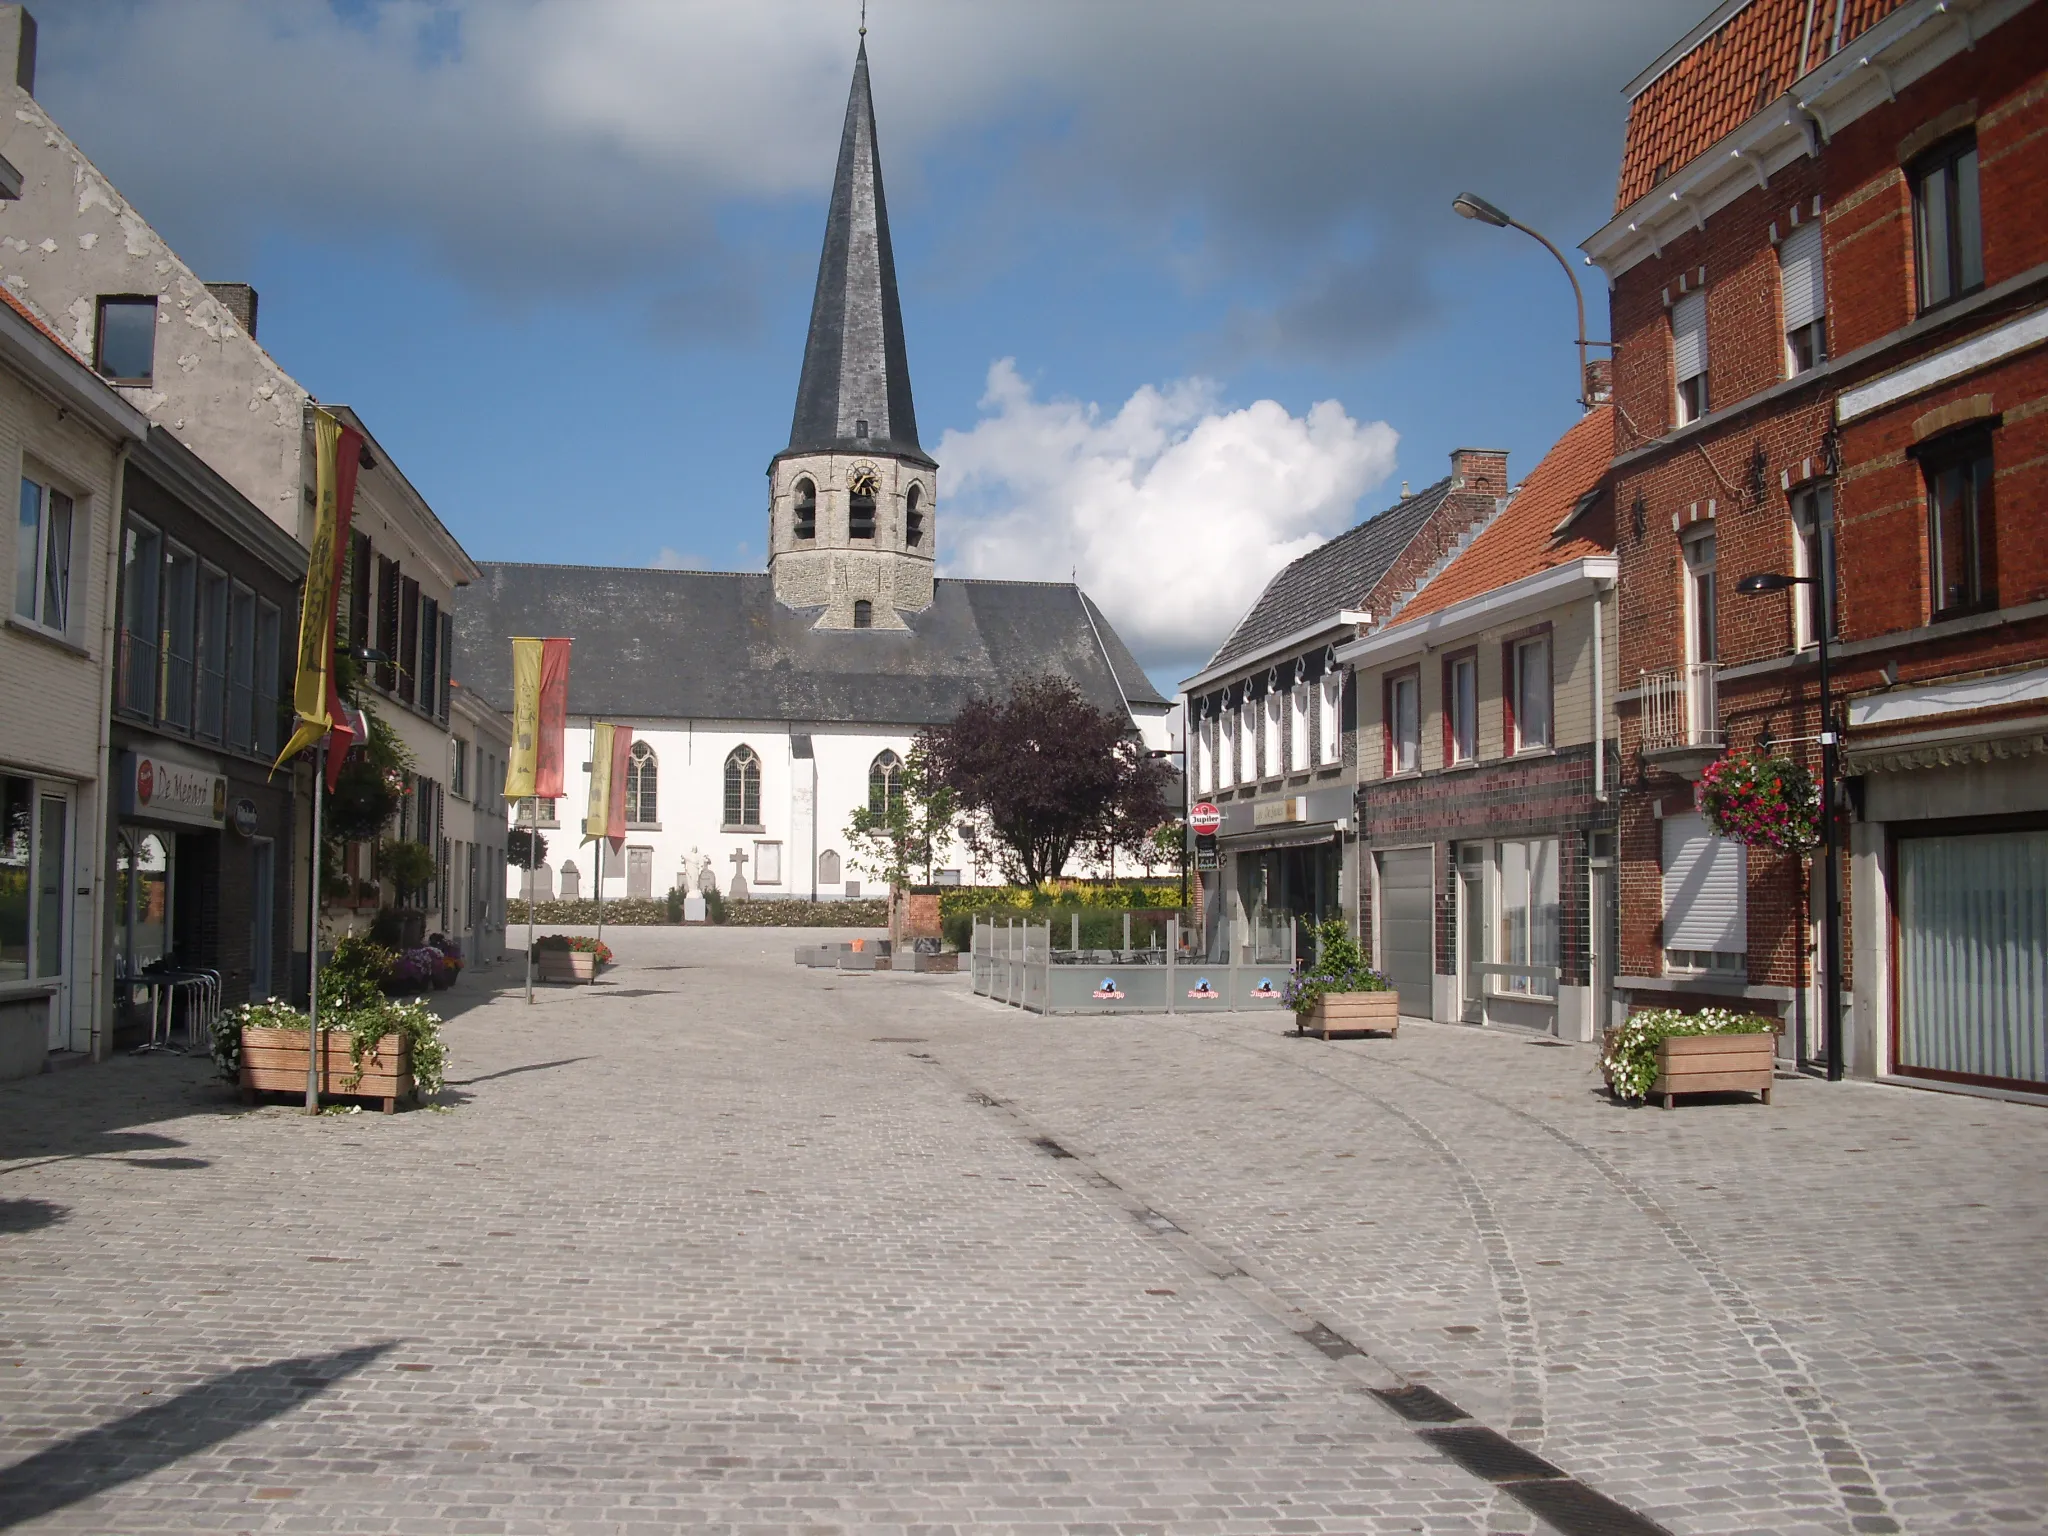 Photo showing: Ursel dorp na de vernieuwing en bouw van een terras - 2011 - Ursel - Knesselare - Oost-Vlaanderen - België.
In de straatstenen het patroon van de vroegere tramlijn.